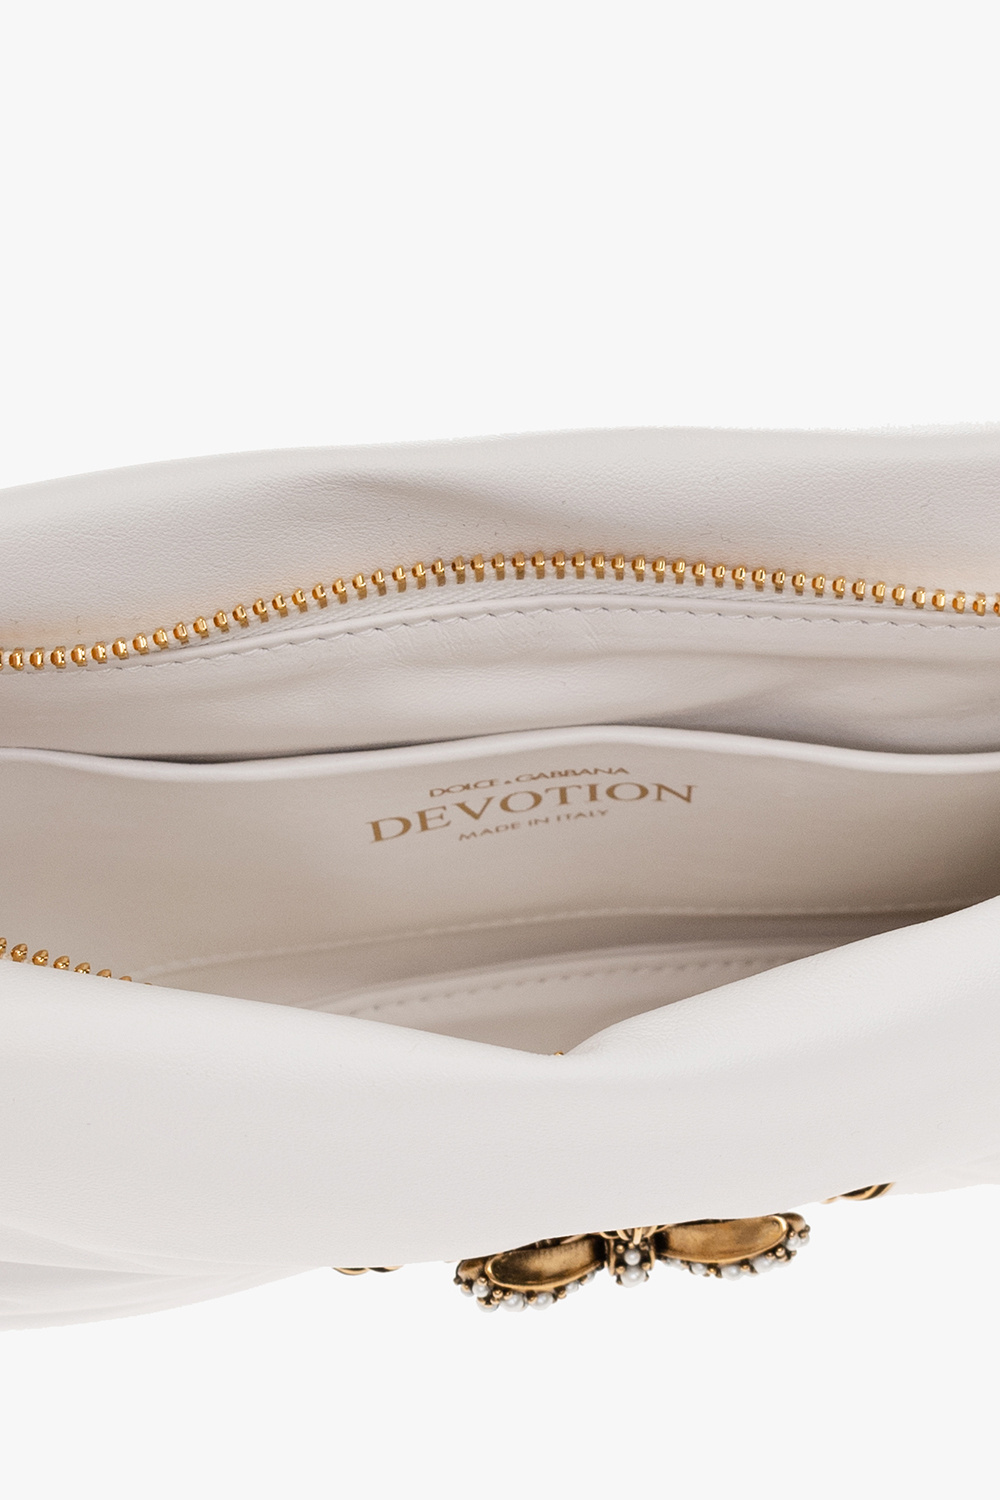 Dolce & Gabbana ‘Devotion Small’ leather shoulder bag